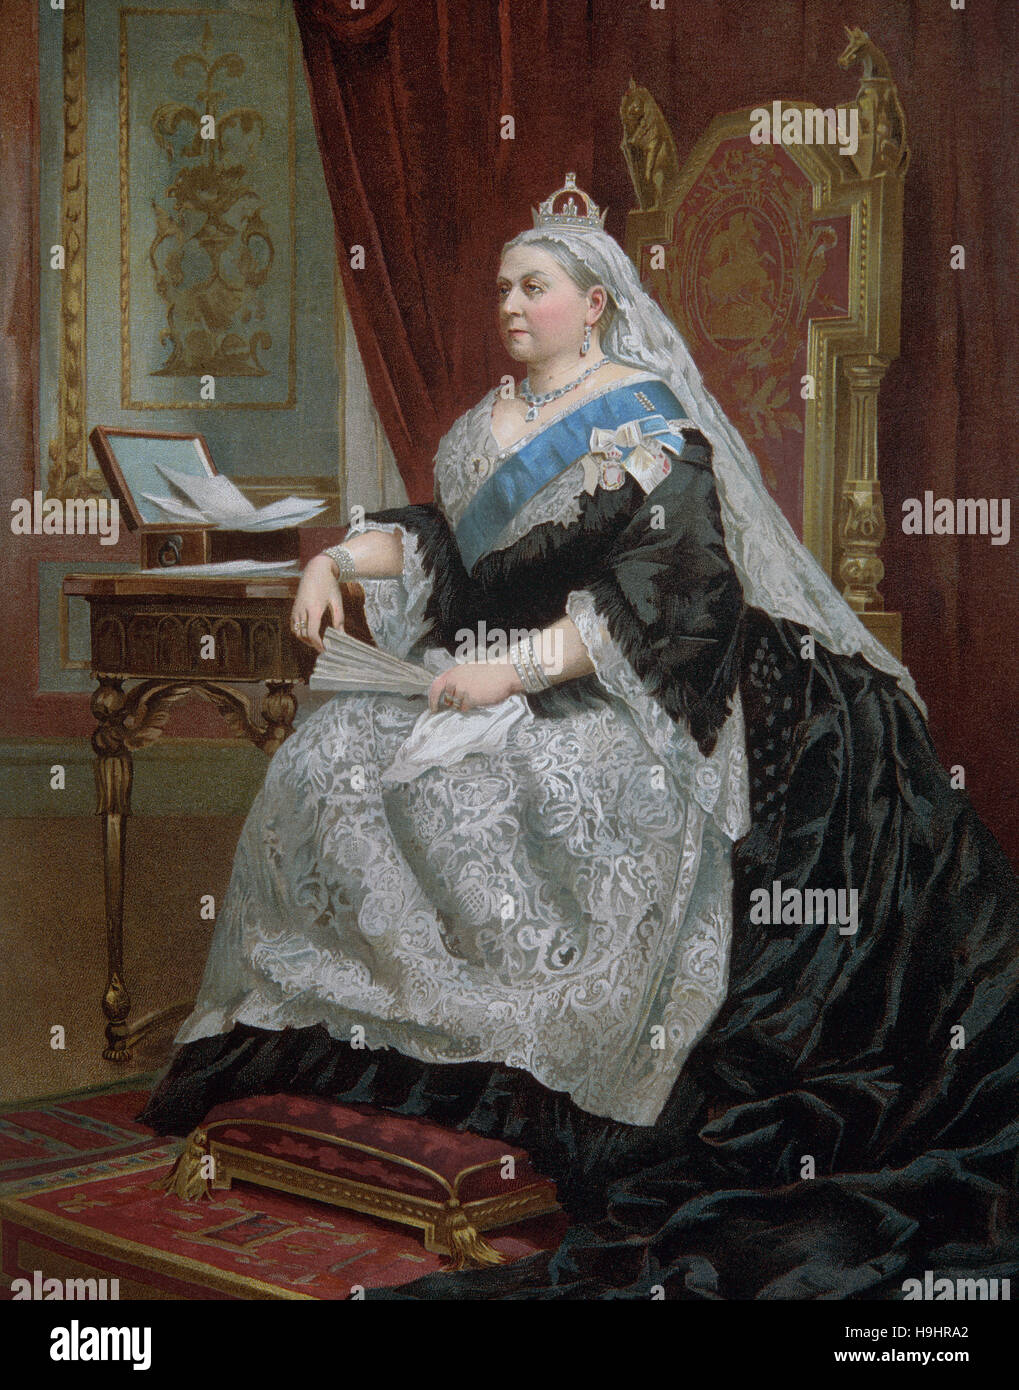 Grabado , retrato de la reina Victoria, Reina del Reino Unido de Gran Bretaña e Irlanda desde 1837 hasta su muerte. 1876 Foto de stock